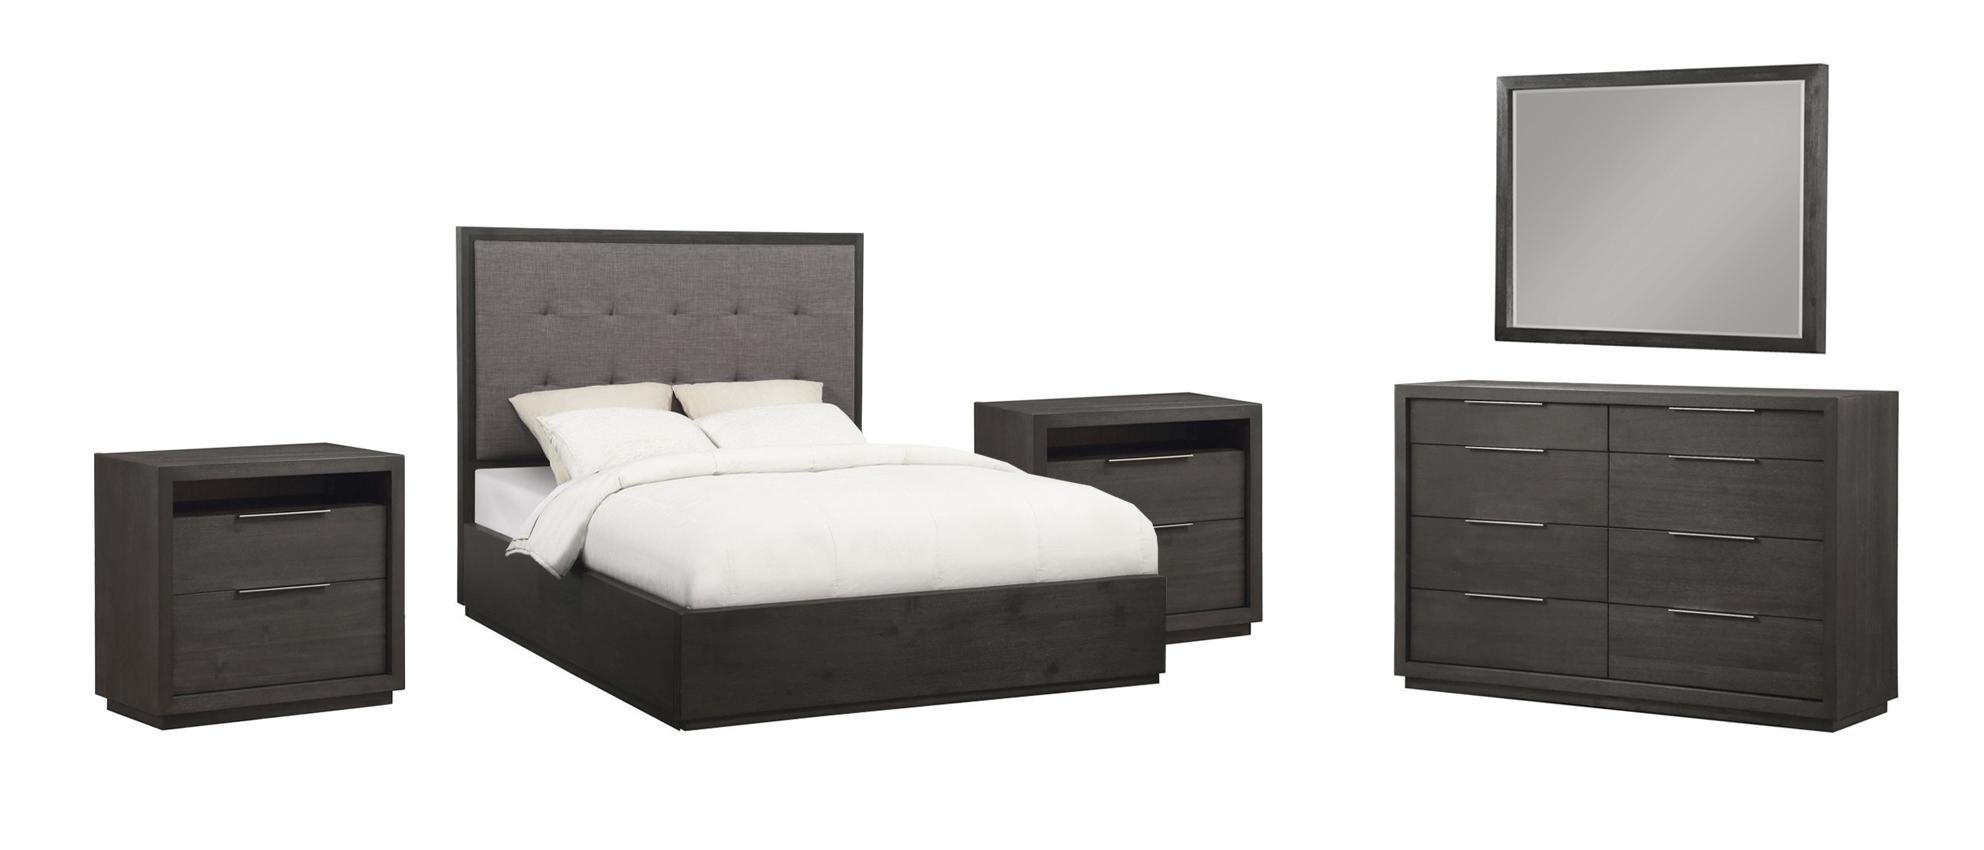 

    
Basalt Gray King PLATFORM Bedroom Set 5Pcs OXFORD by Modus Furniture
